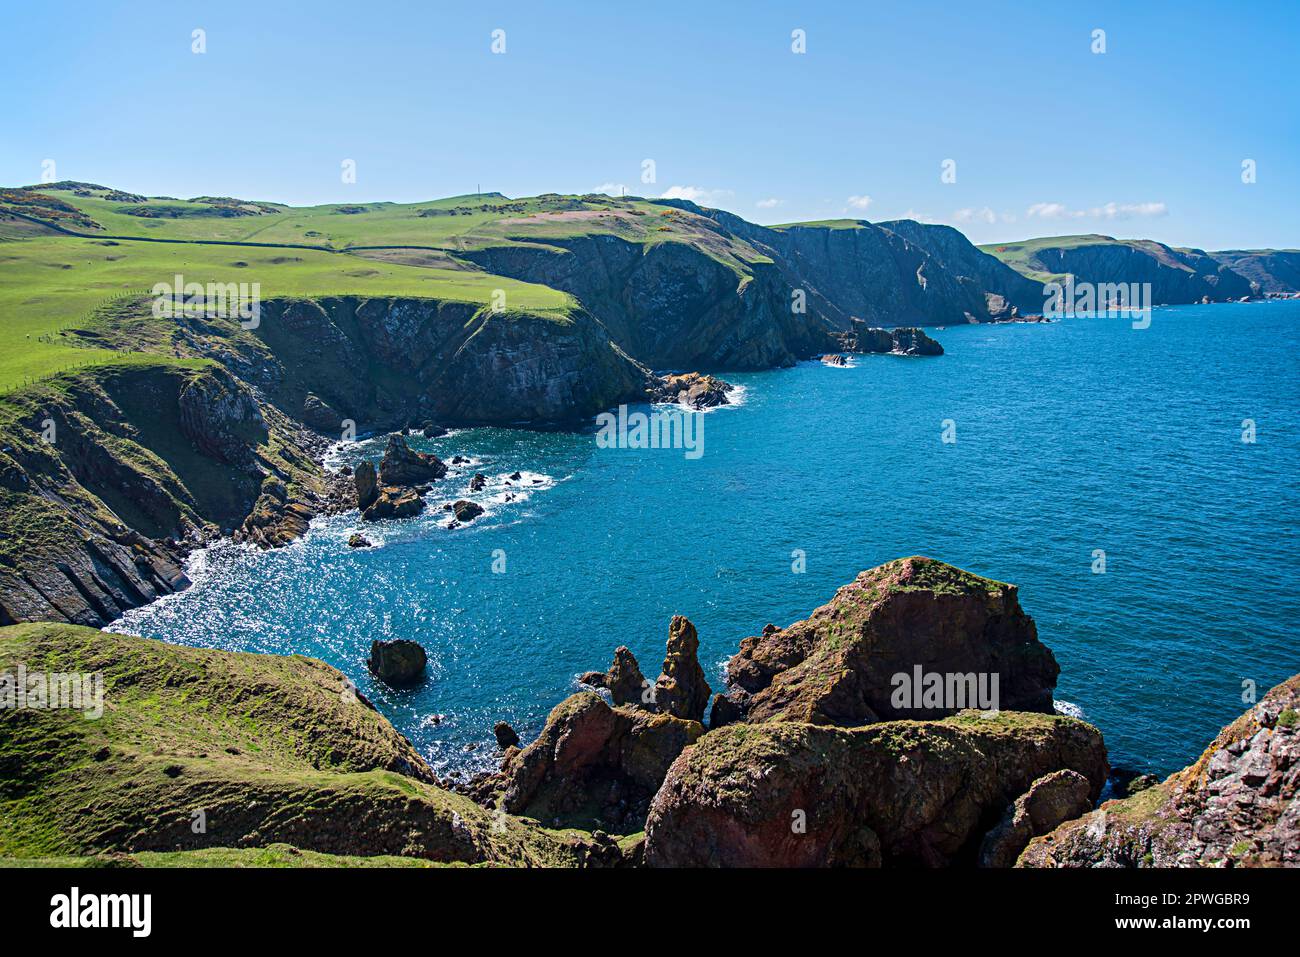 Fotografia di paesaggio della costa del Mare del Nord, serenità, paesaggi, panorama, roccia, pietra, rocciosa Foto Stock